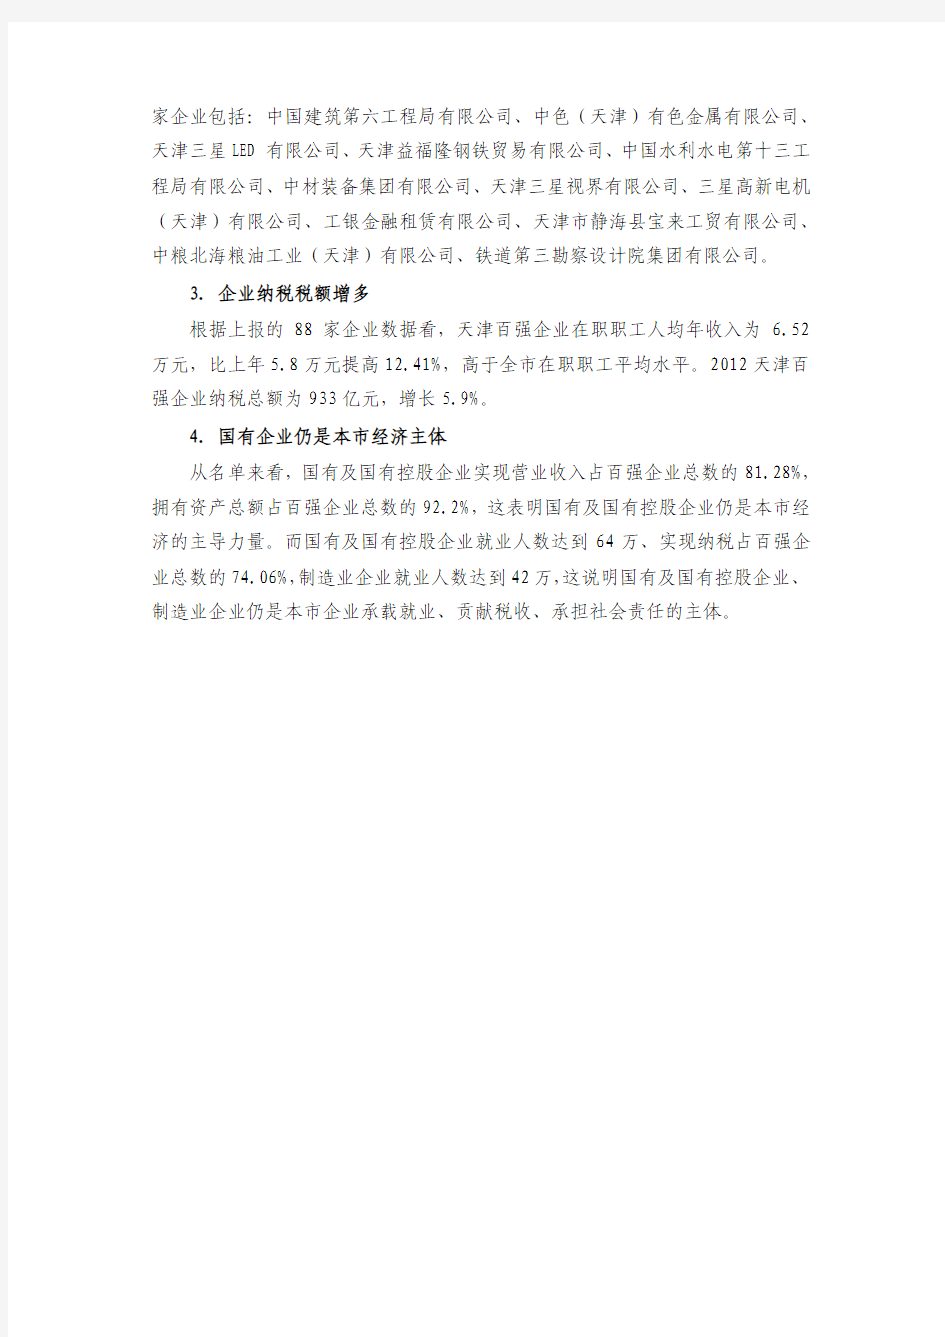 2012天津百强企业名单出炉